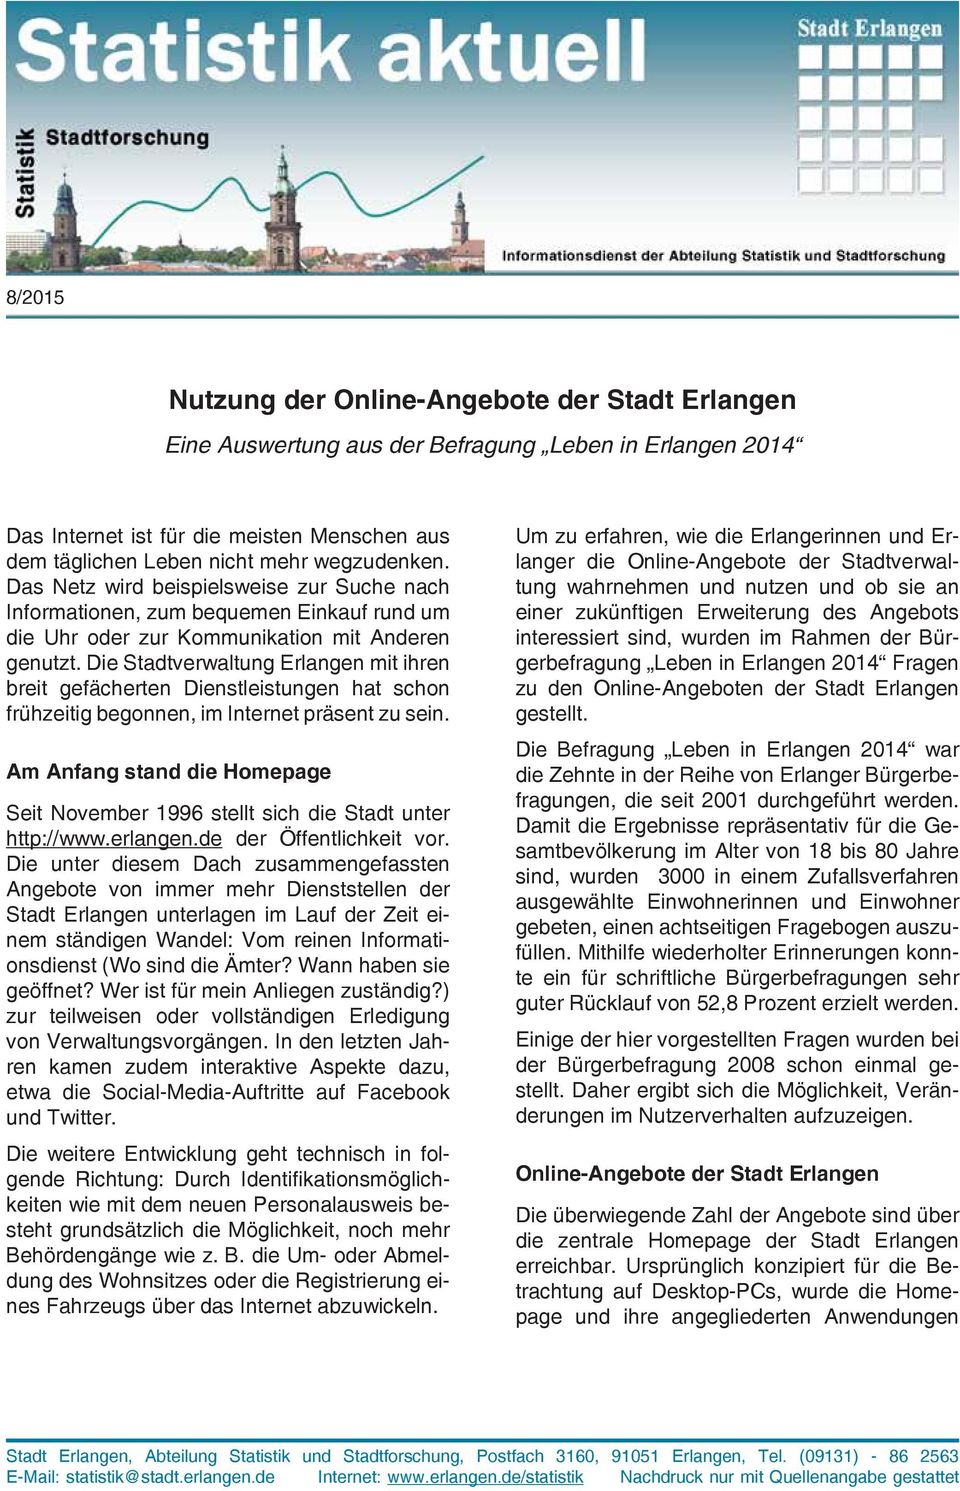 Die Stadtverwaltung Erlangen mit ihren breit gefächerten Dienstleistungen hat schon frühzeitig begonnen, im Internet präsent zu sein.